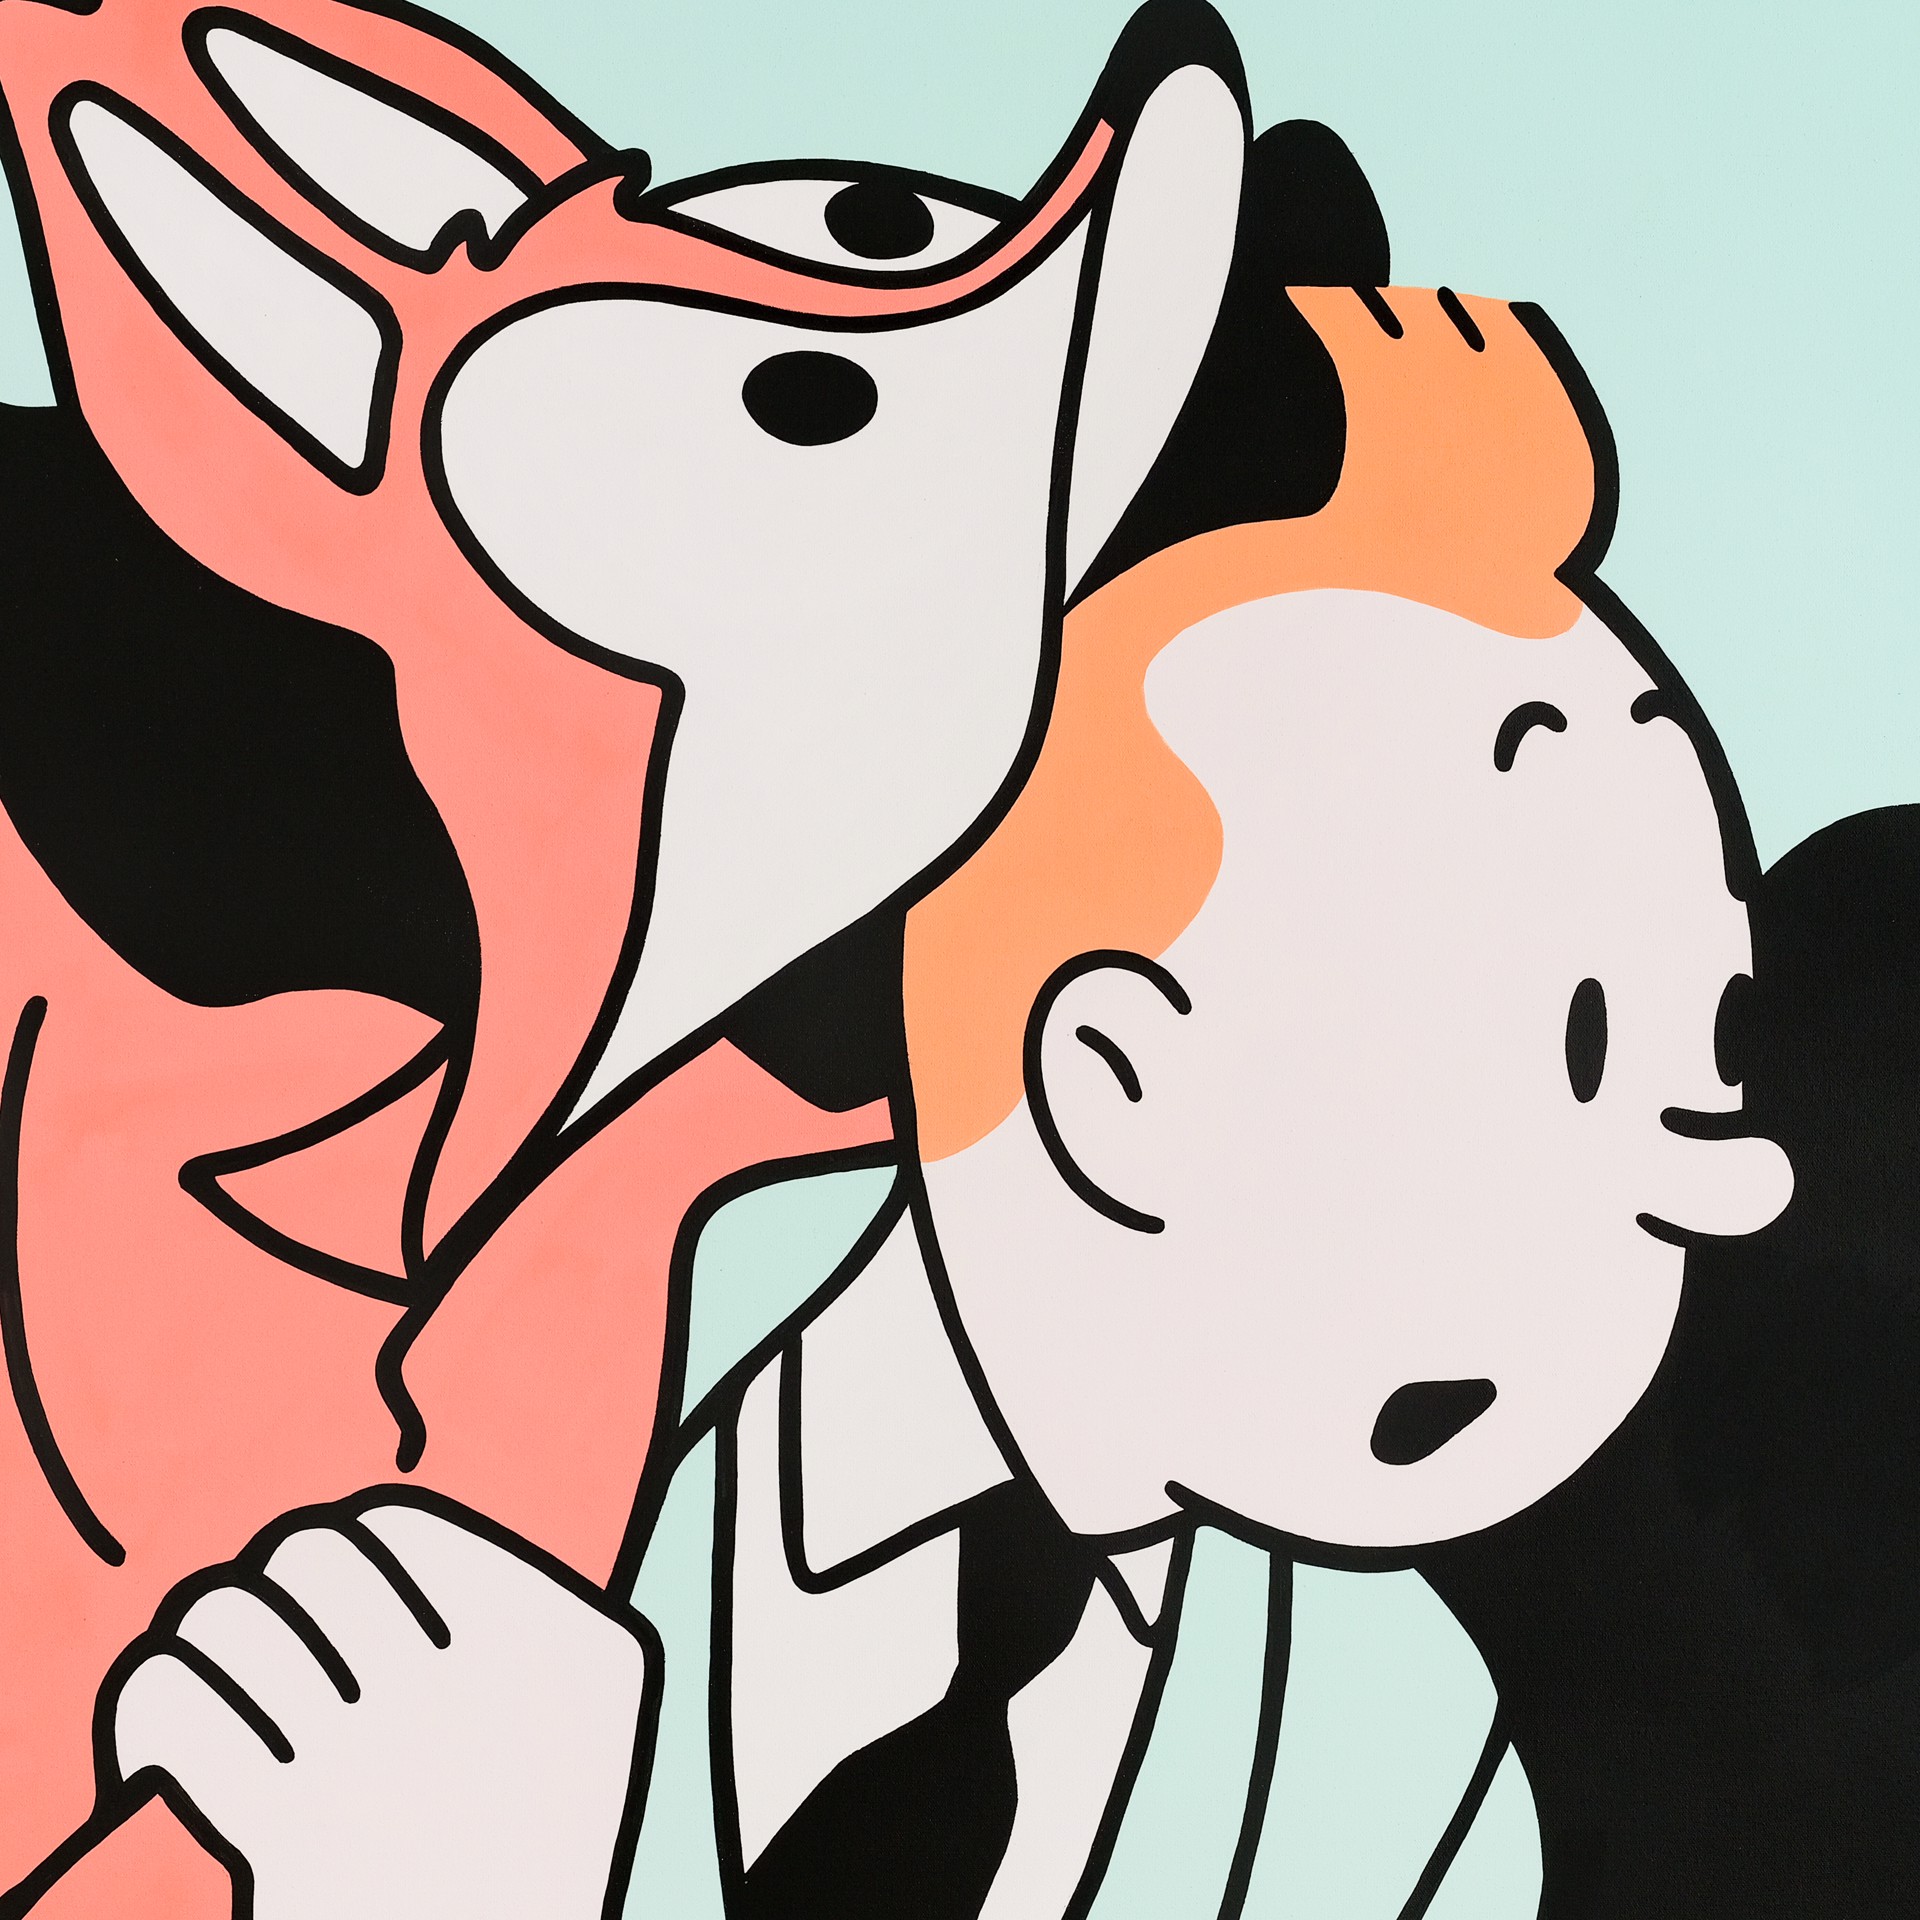 Tintin in a Fox by Antoine TAVA